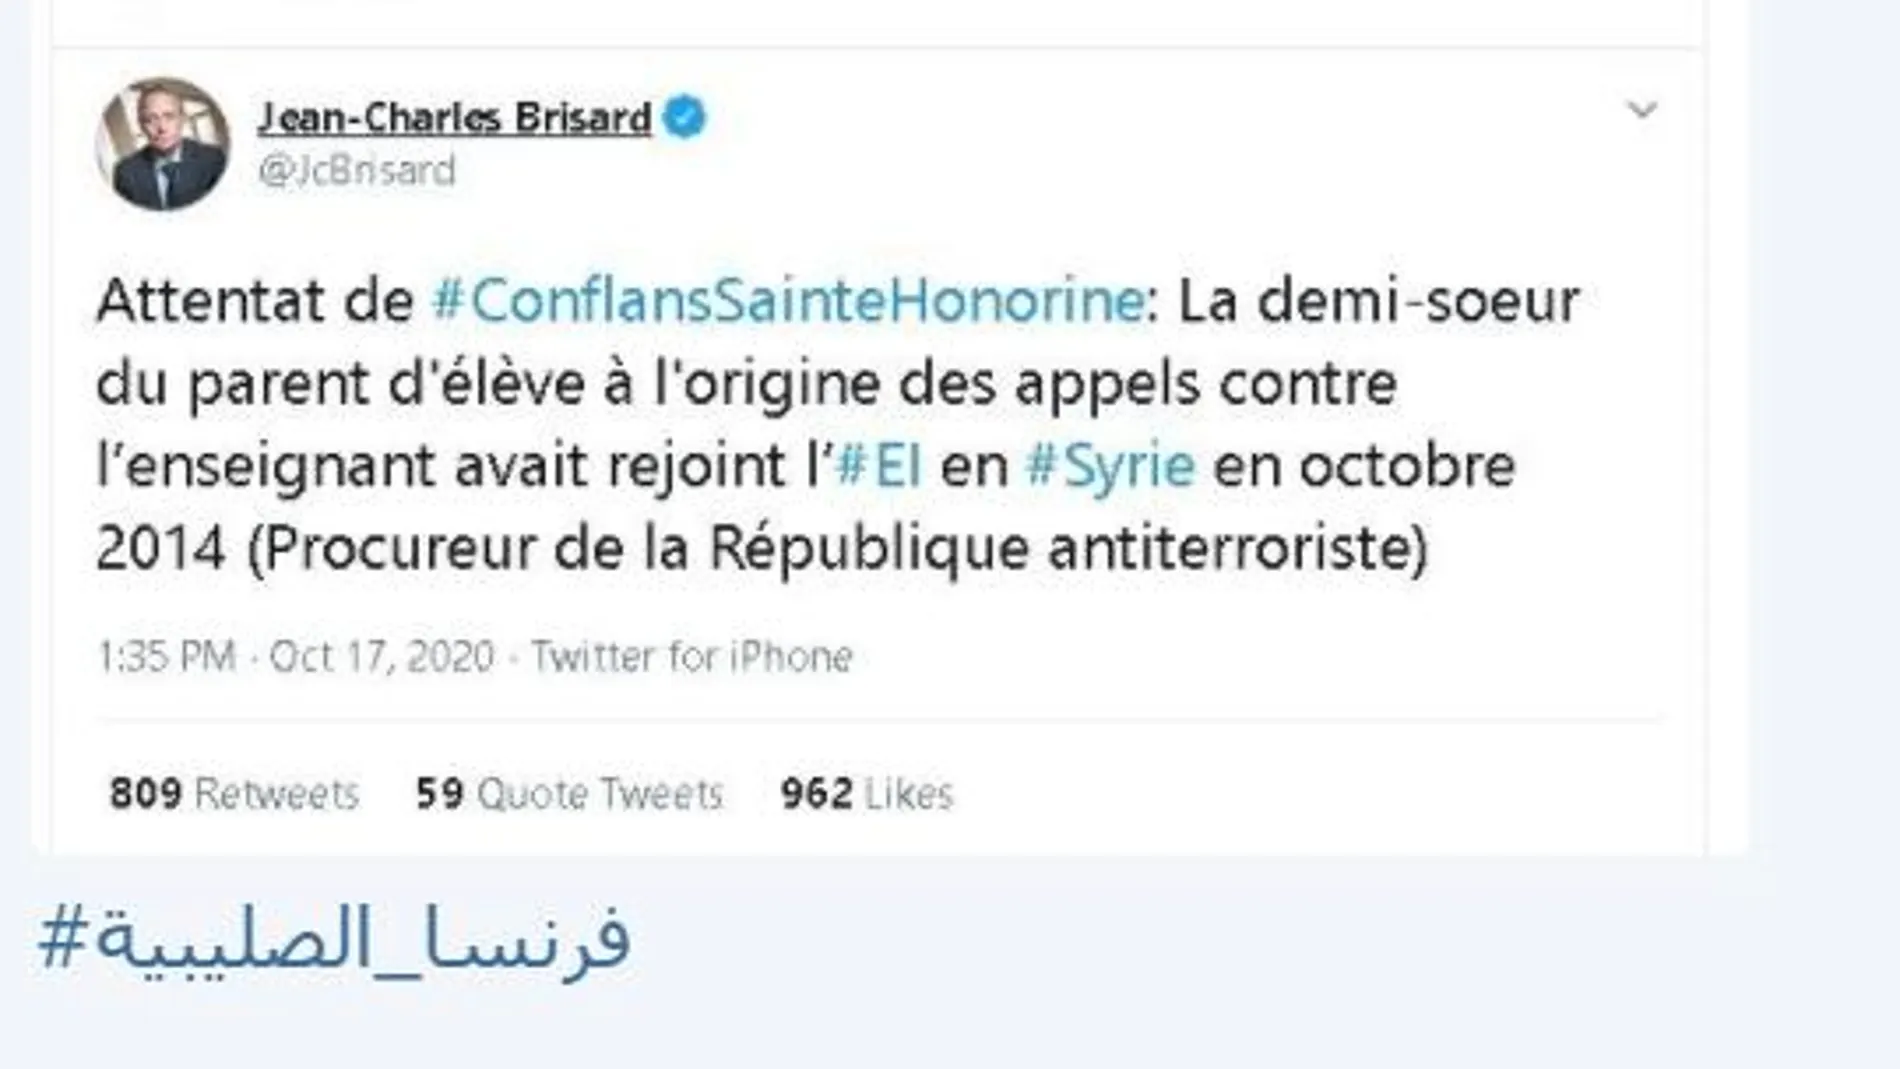 Daesh reproduce un tweet de Jean Carles Brisard, experto en terrorismo y la fotografía de la cabeza decapitada, que LA RAZÓN no difunde